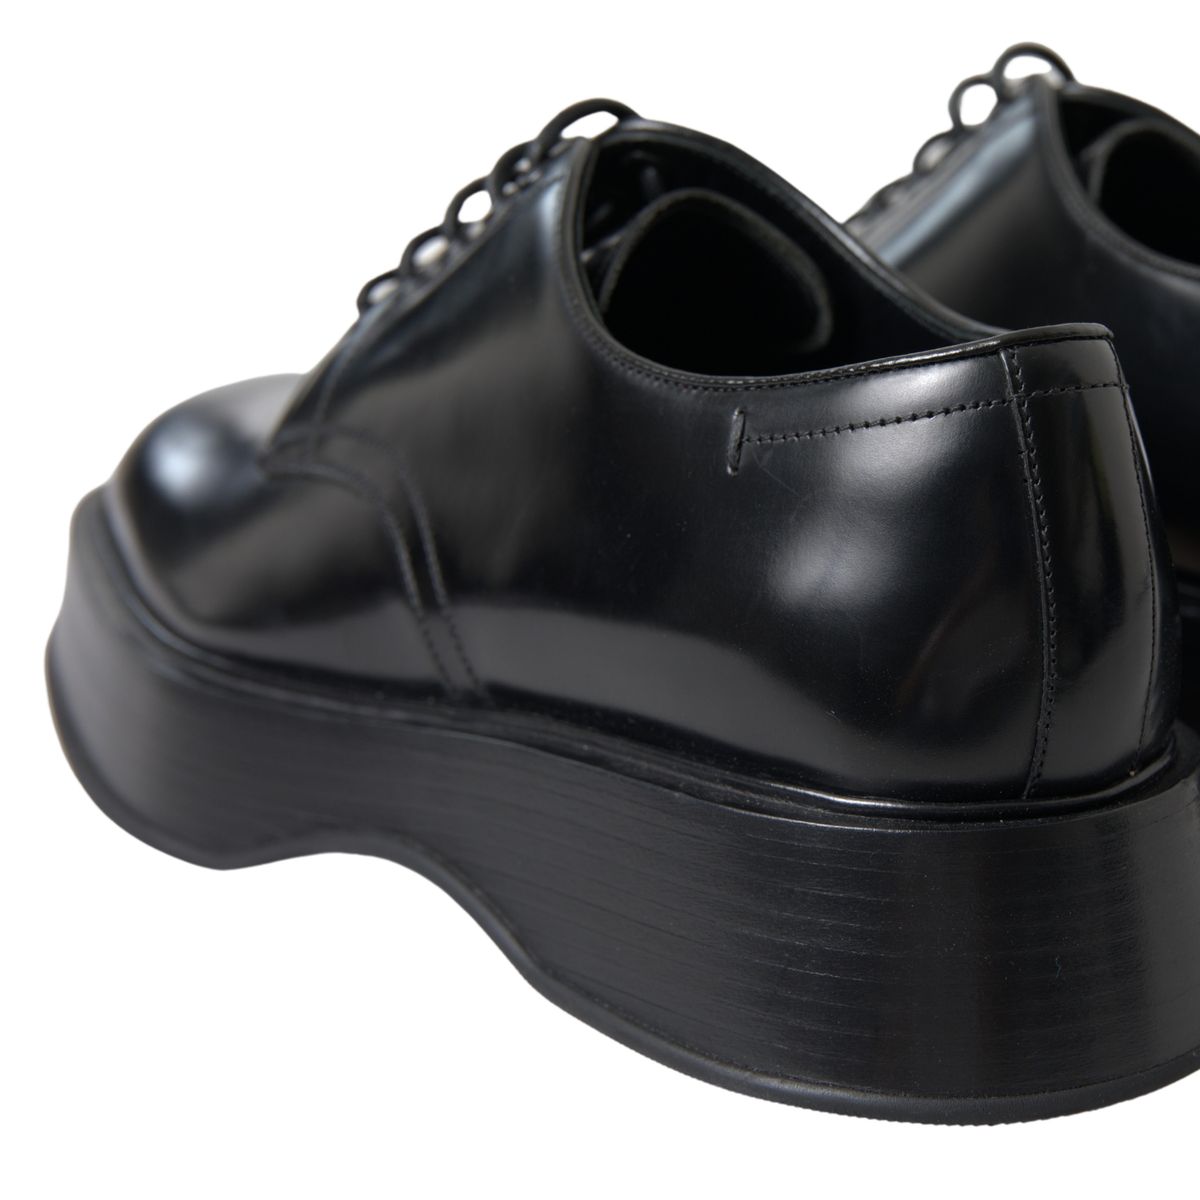 Dolce & Gabbana Elegant Black Leather Formal Men's Shoes